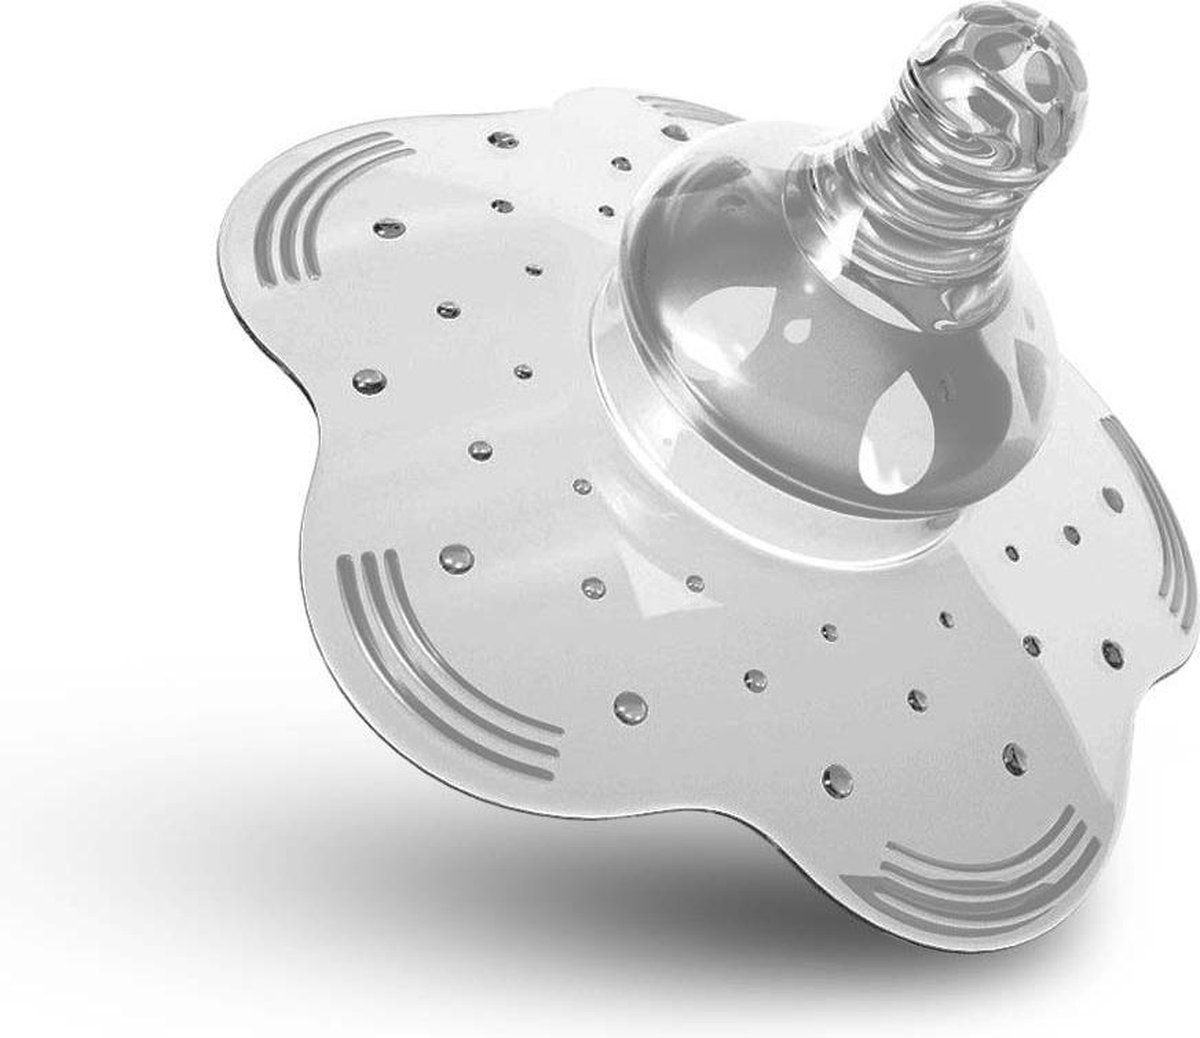 Tepelhoedje voor borstvoeding - Siliconen tepelbeschermer - 2,5 cm speen -  Beschermend... | bol.com